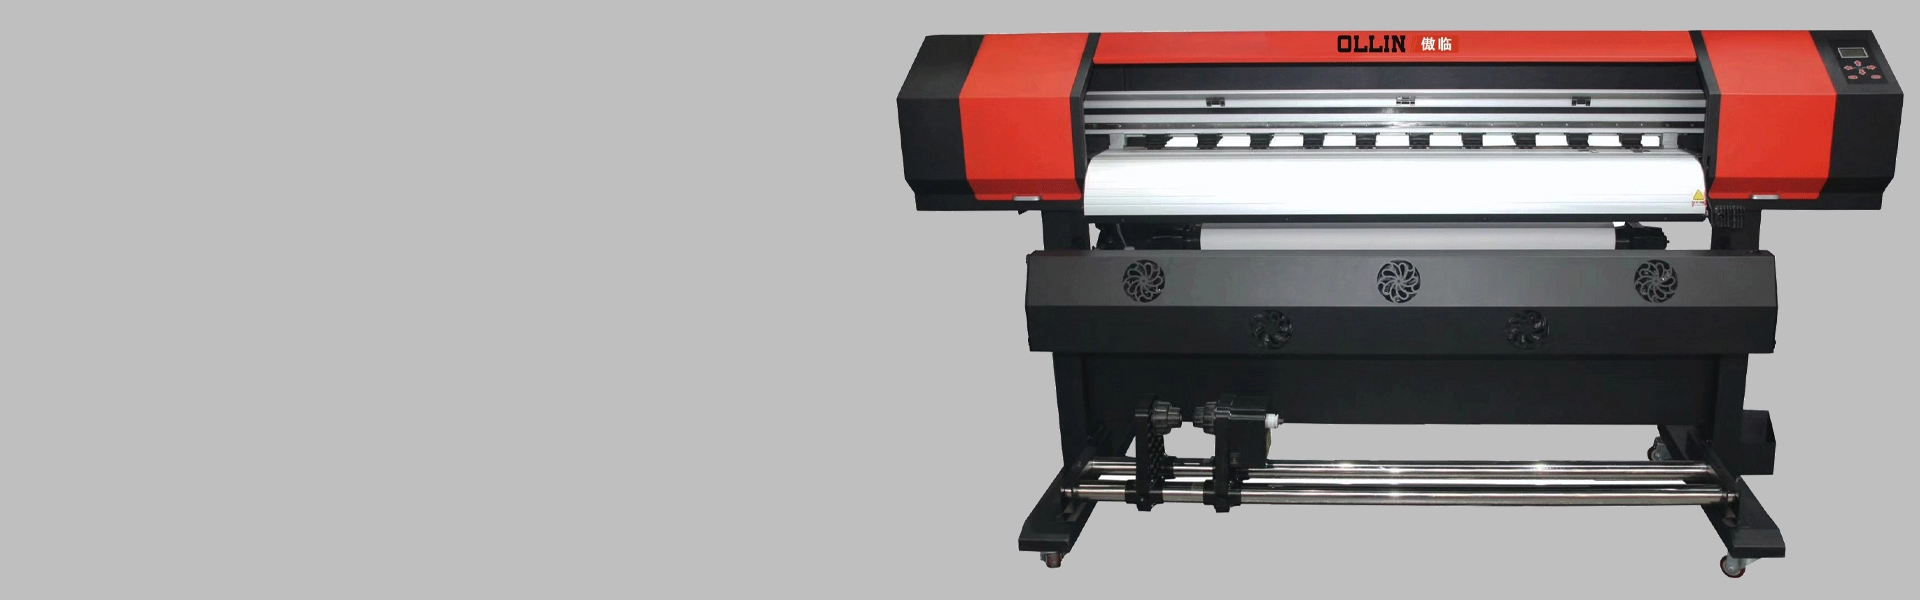 1,2-метровый сублимационный принтер